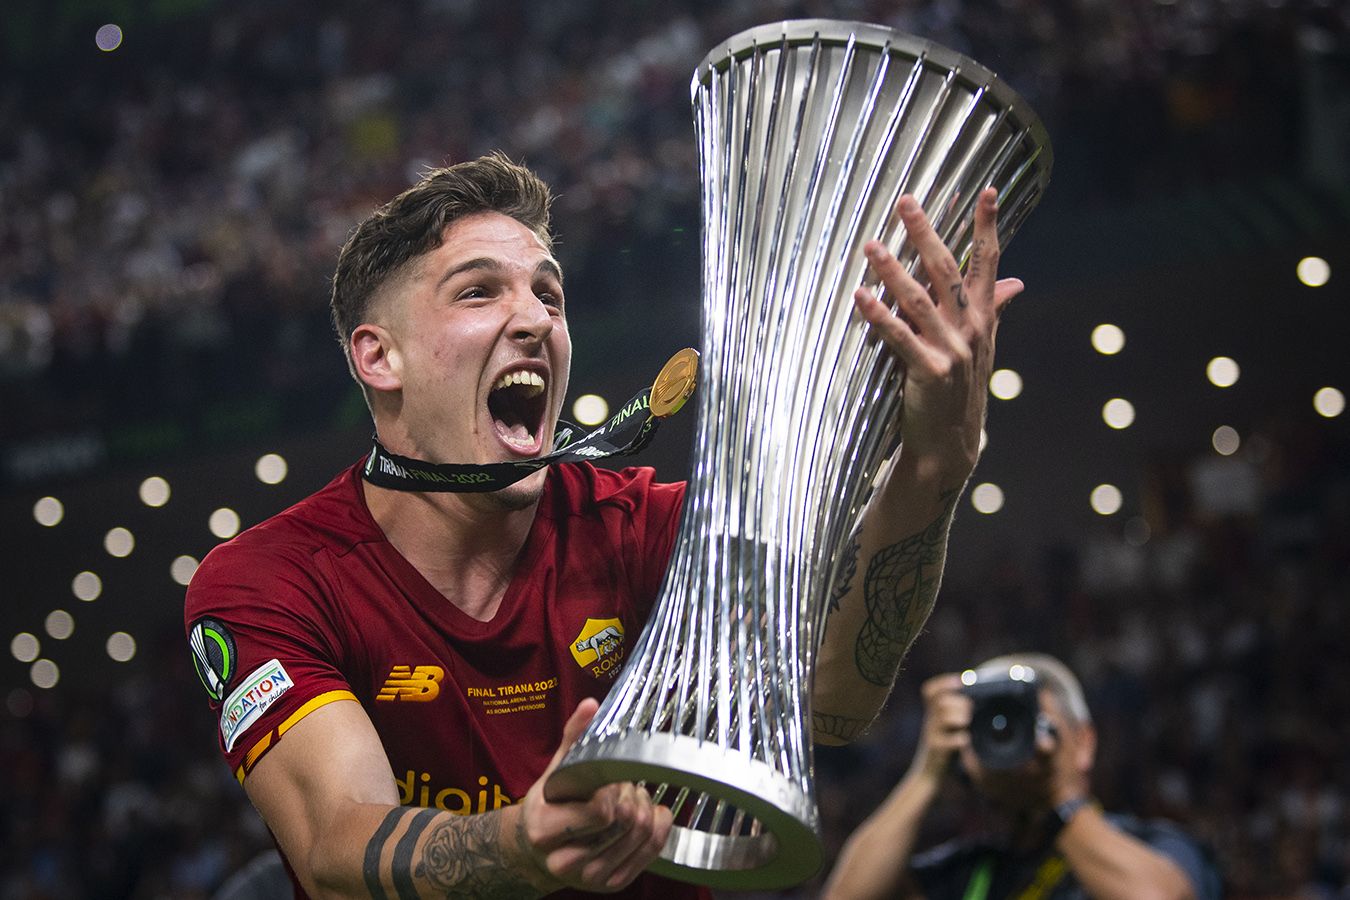 Кубок Лиги конференций пропишется в Риме или есть другие варианты?